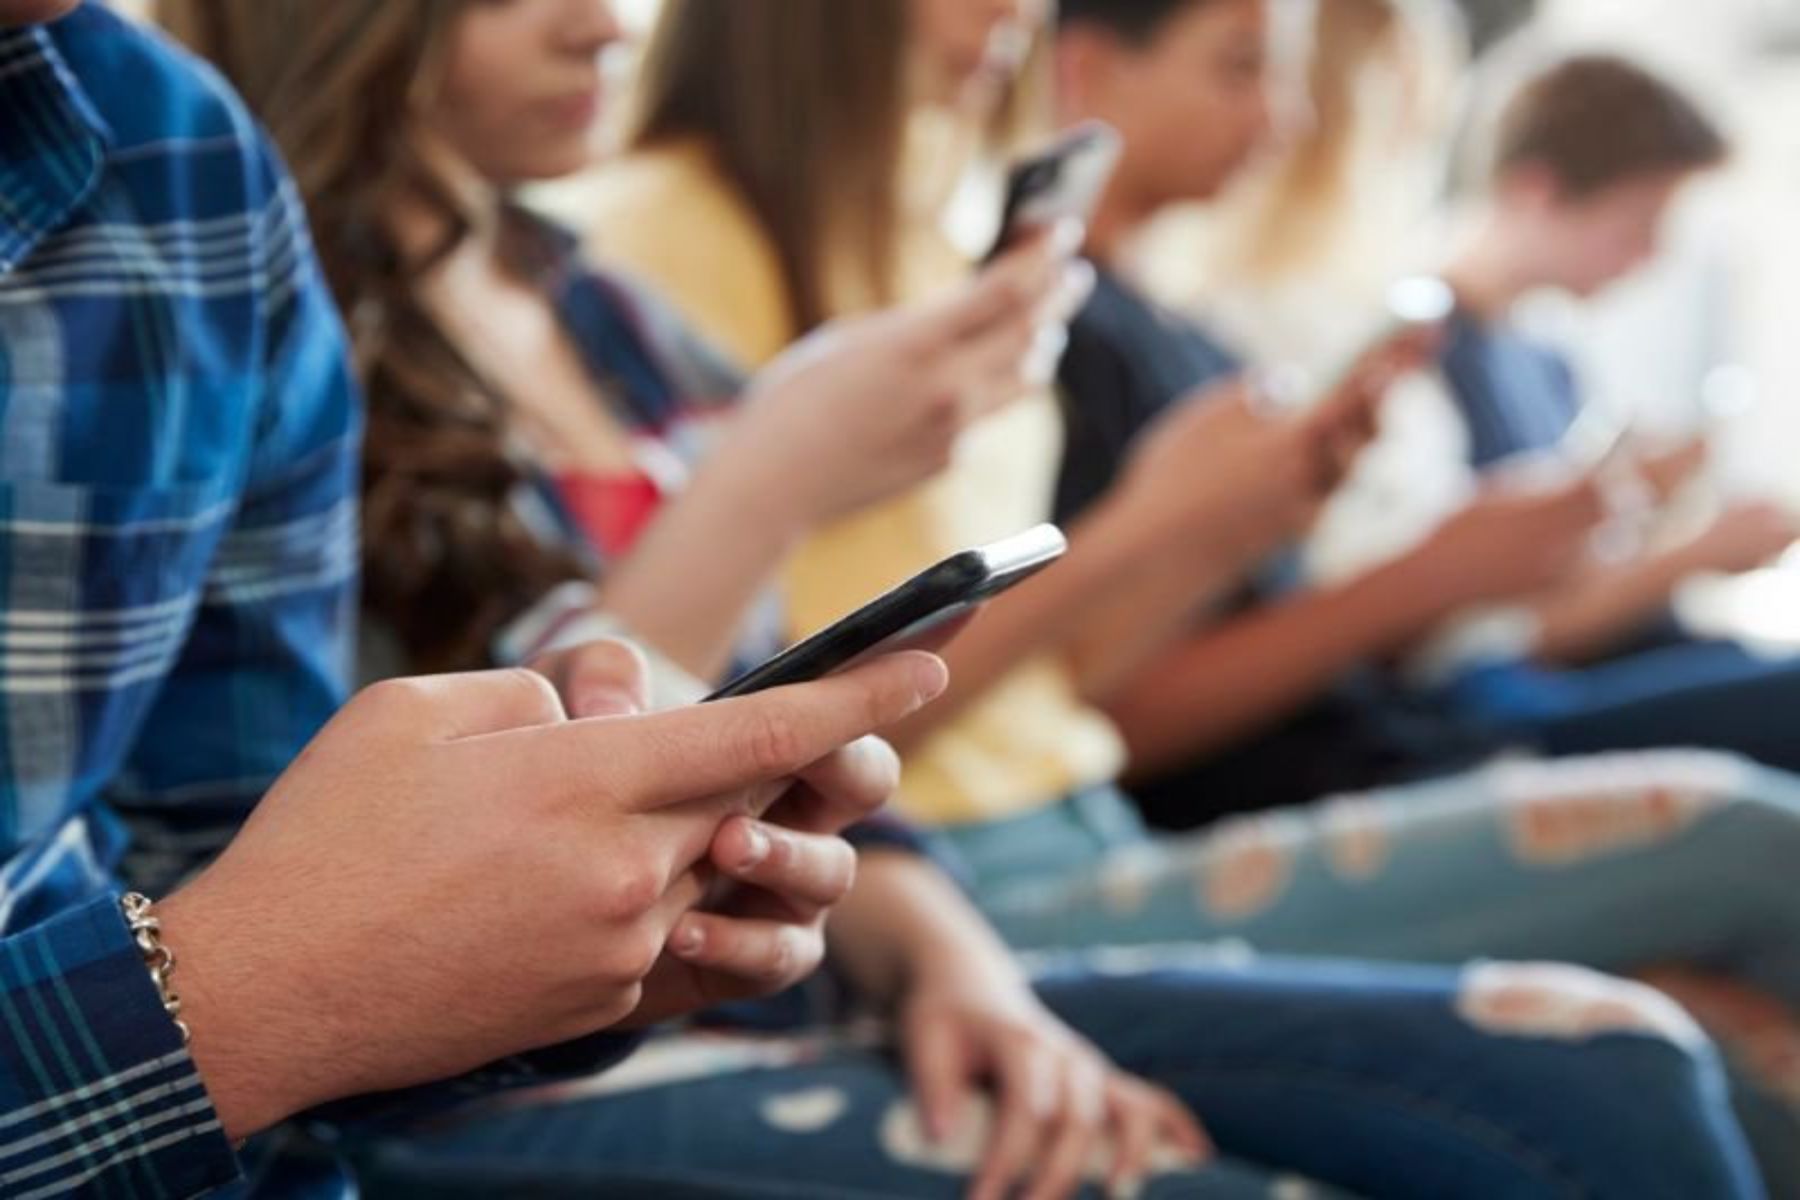 Λος Άντζελες: Γιατί απαγορεύει την χρήση smartphone στο σχολείο;